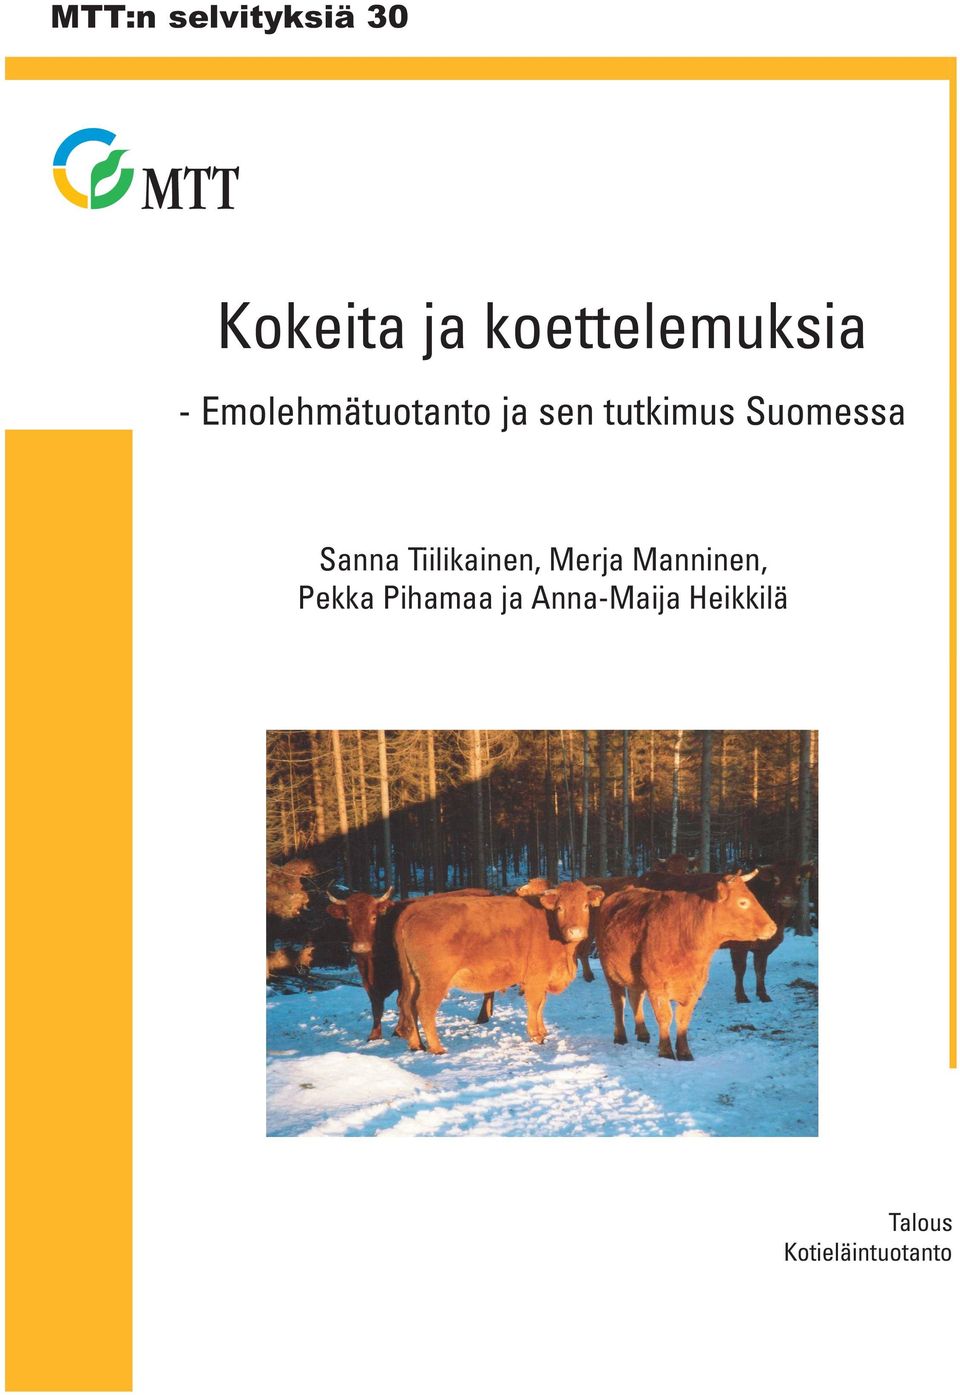 Sanna Tiilikainen, Merja Manninen, Pekka